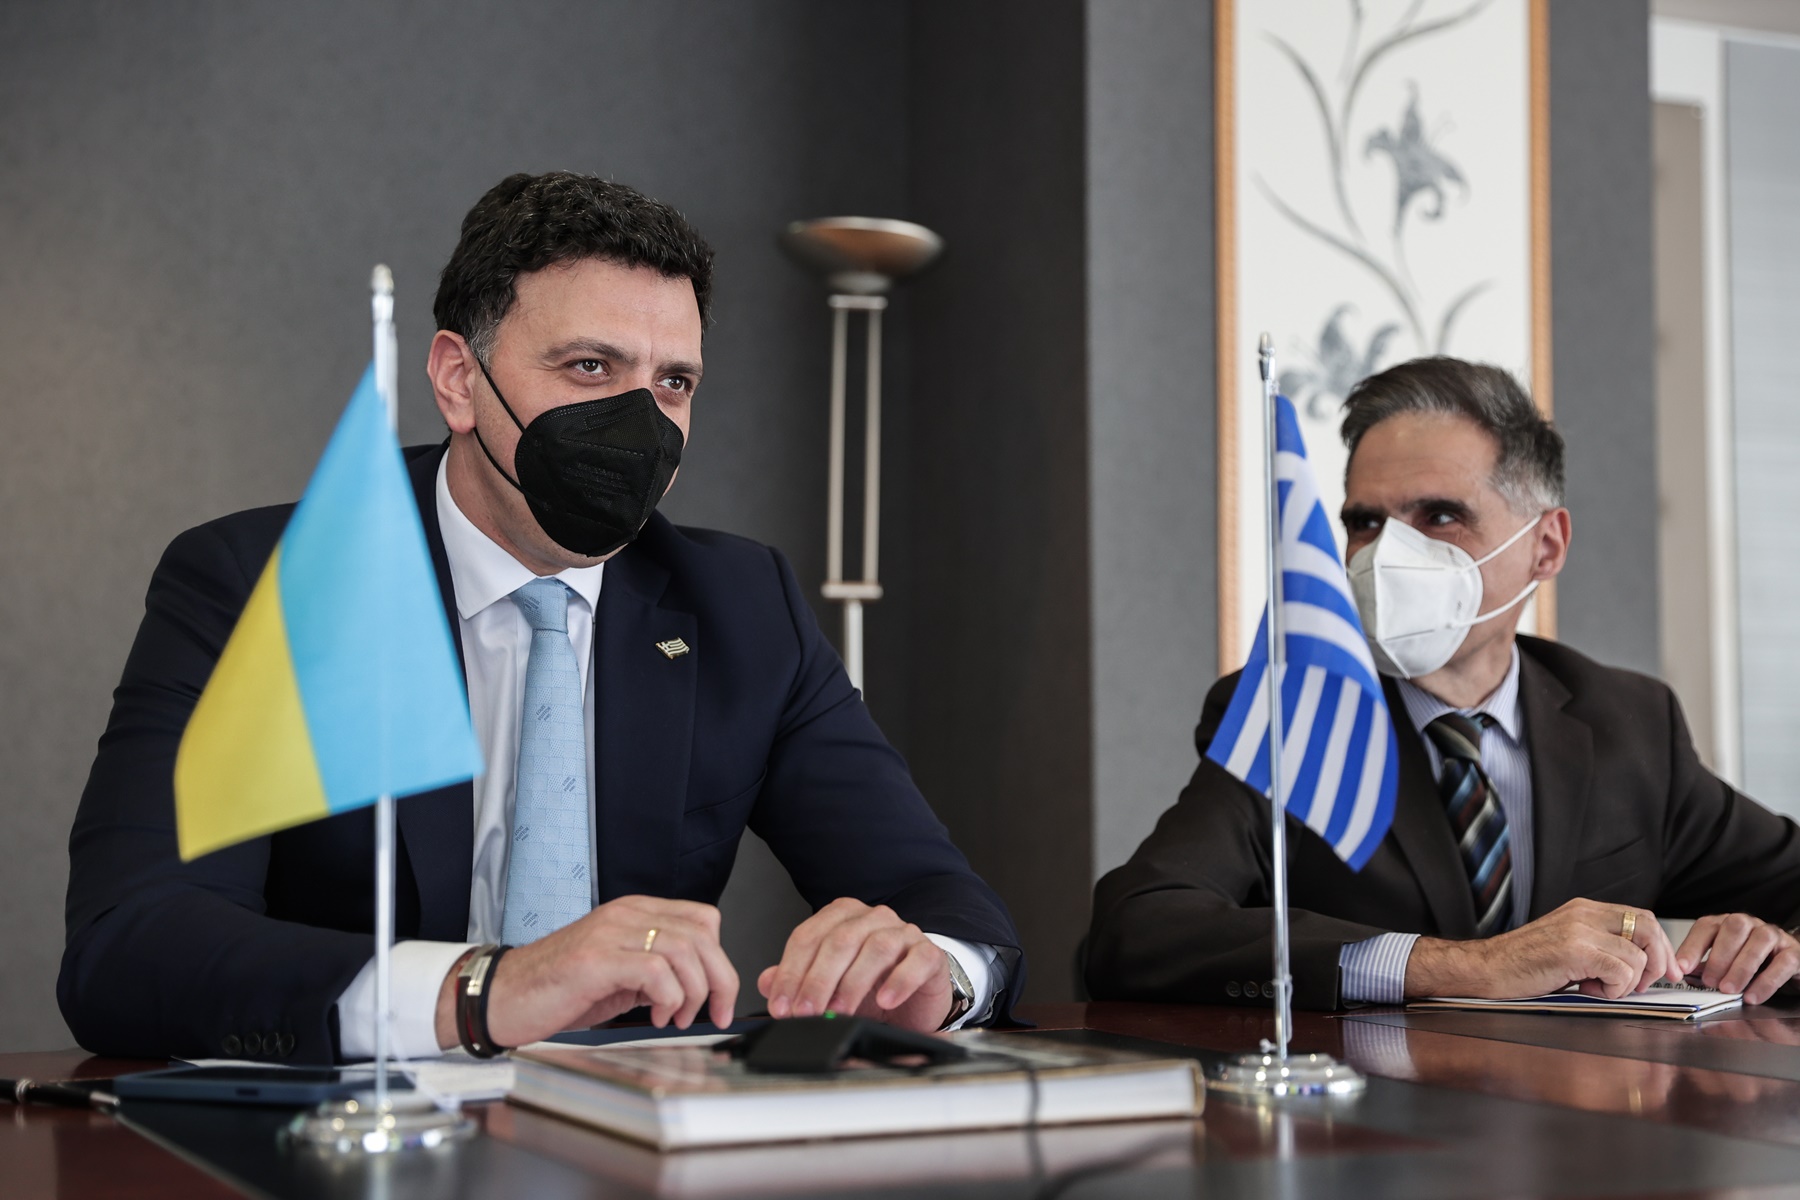 Ουκρανοί στην Ελλάδα: Δυνατότητα να εργαστούν στον ξενοδοχειακό κλάδο